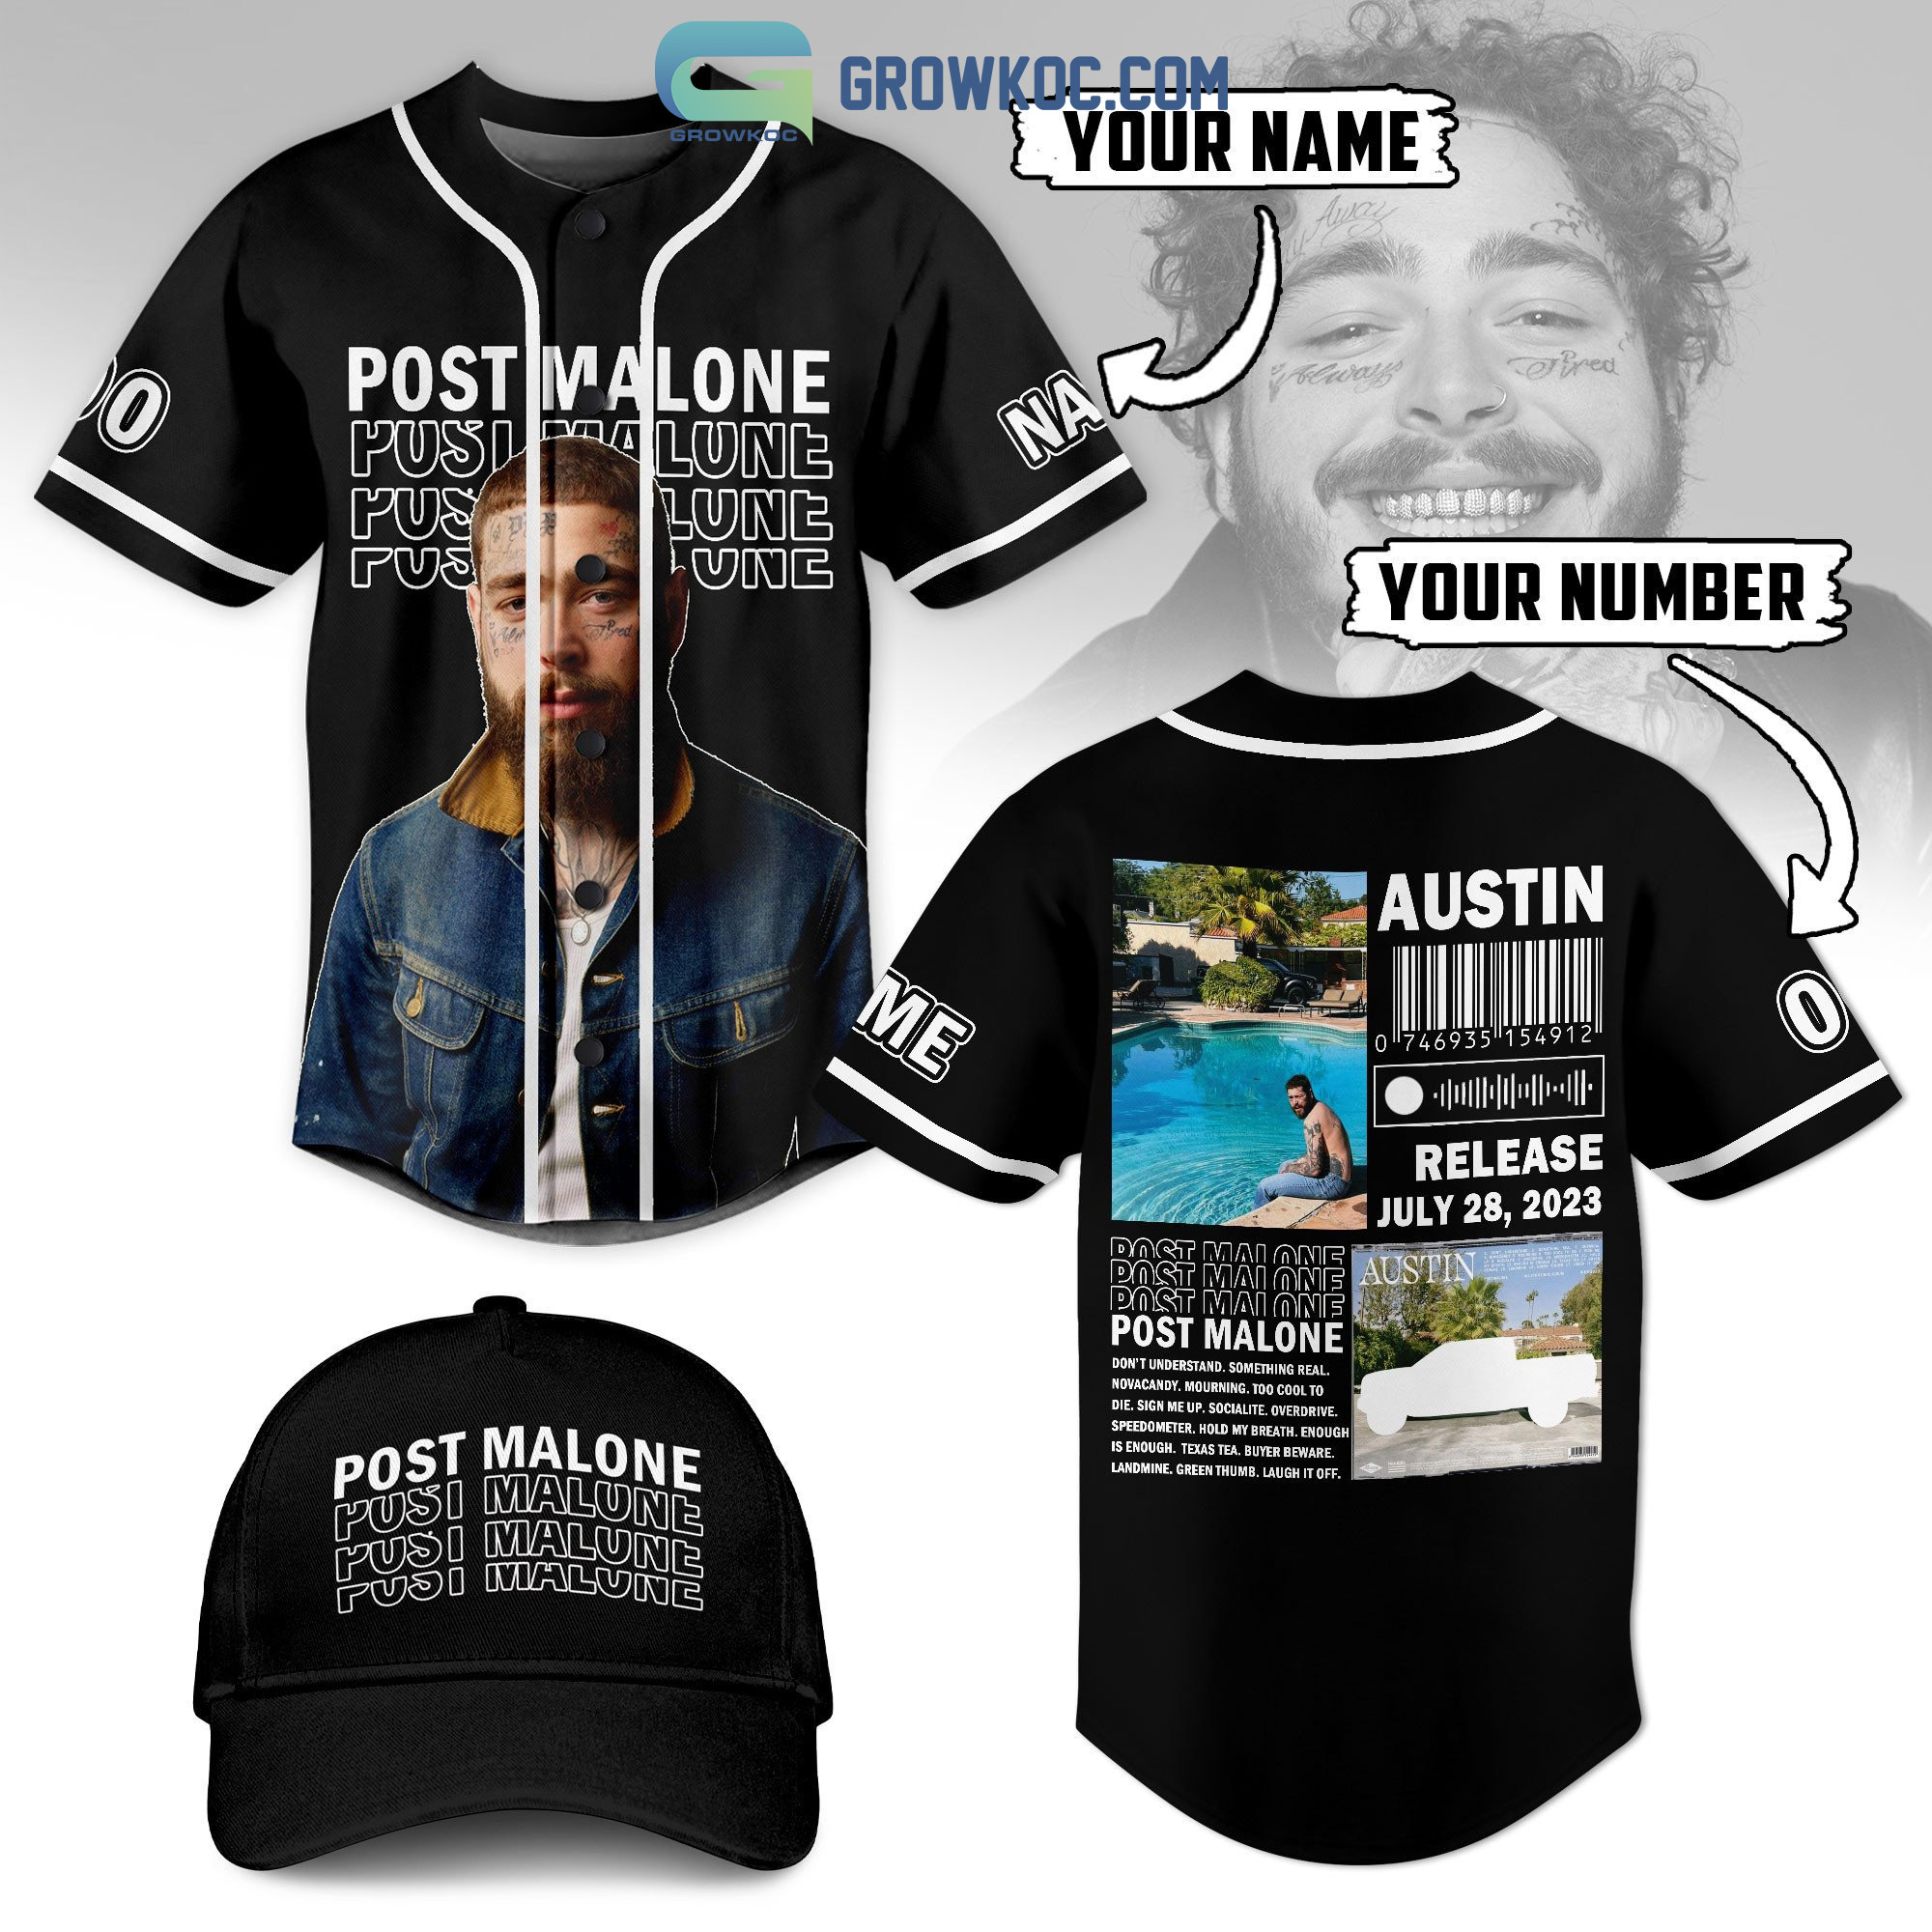 Post Malone Austin Release July 28 2023 Personalized Baseball Jersey -  Growkoc